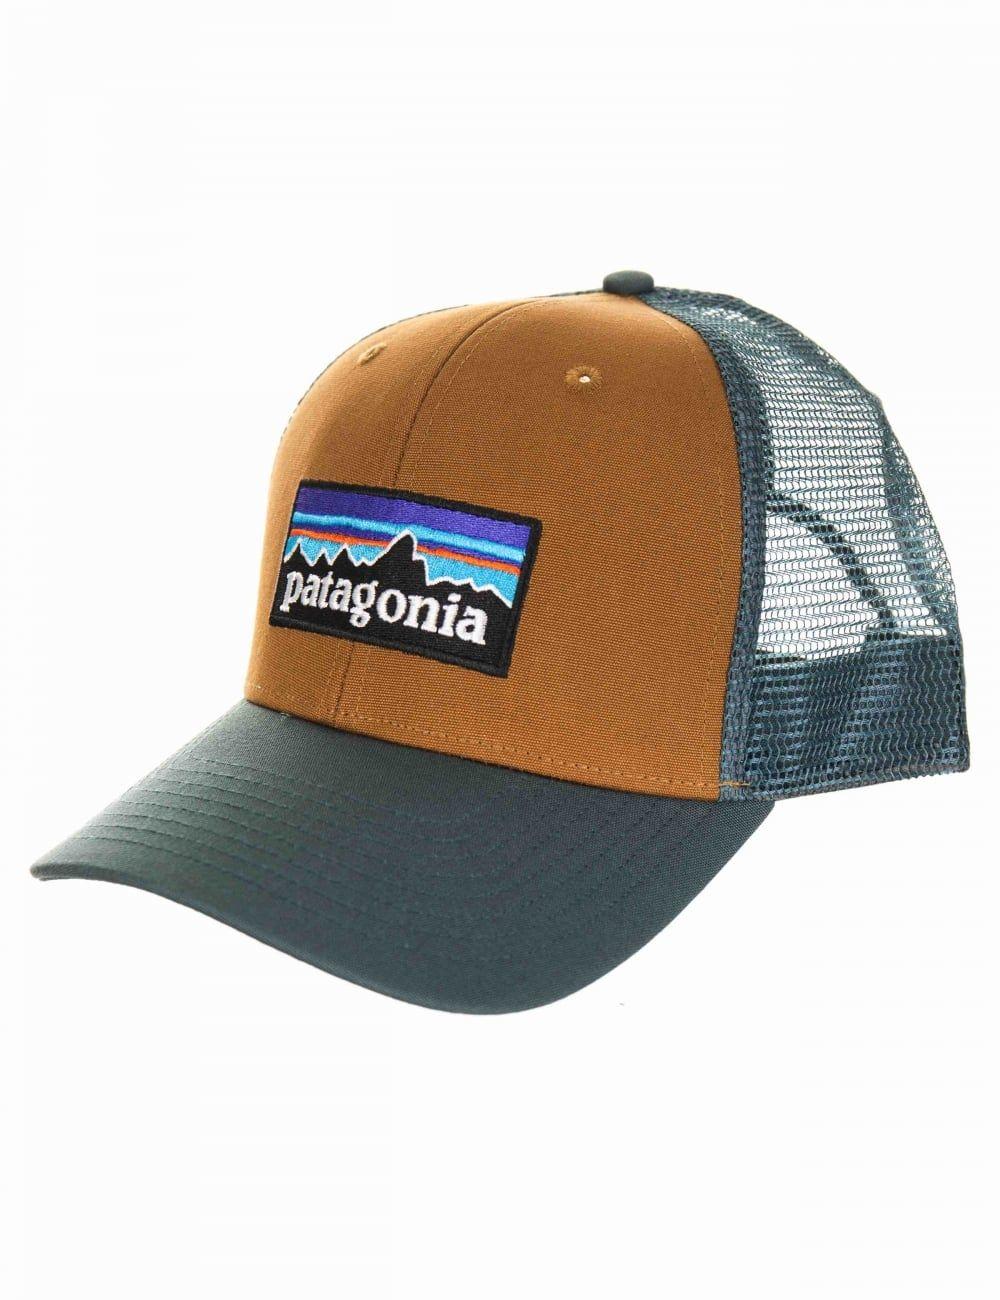 Patagonia Bear Logo - Patagonia P 6 Logo Trucker Hat Brown From Fat